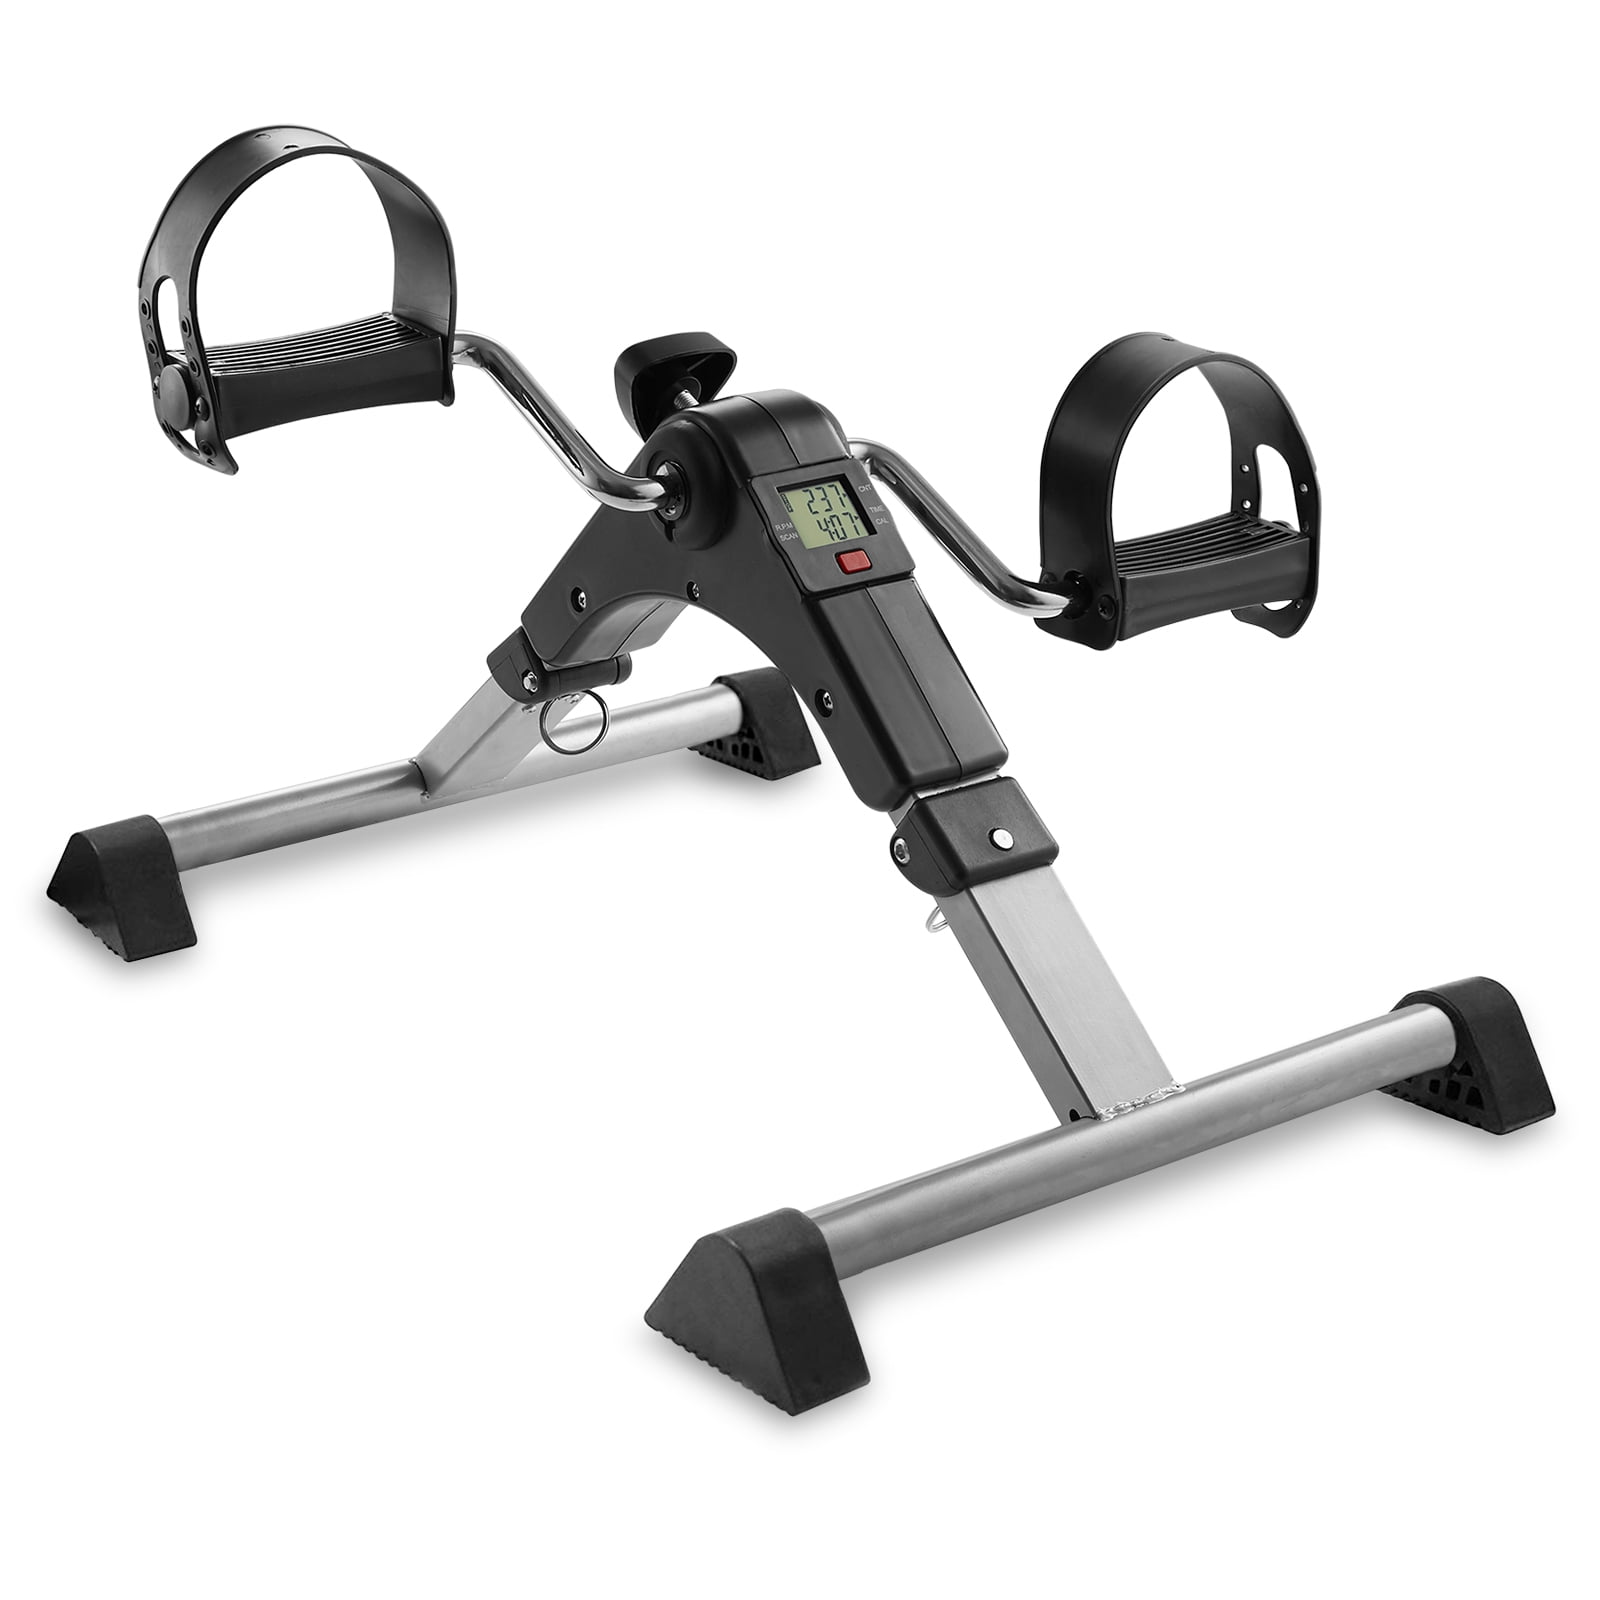 Folding Pedal Exerciser Mini Arm Leg LCD Digital Exercise Bike Fitness Gym 